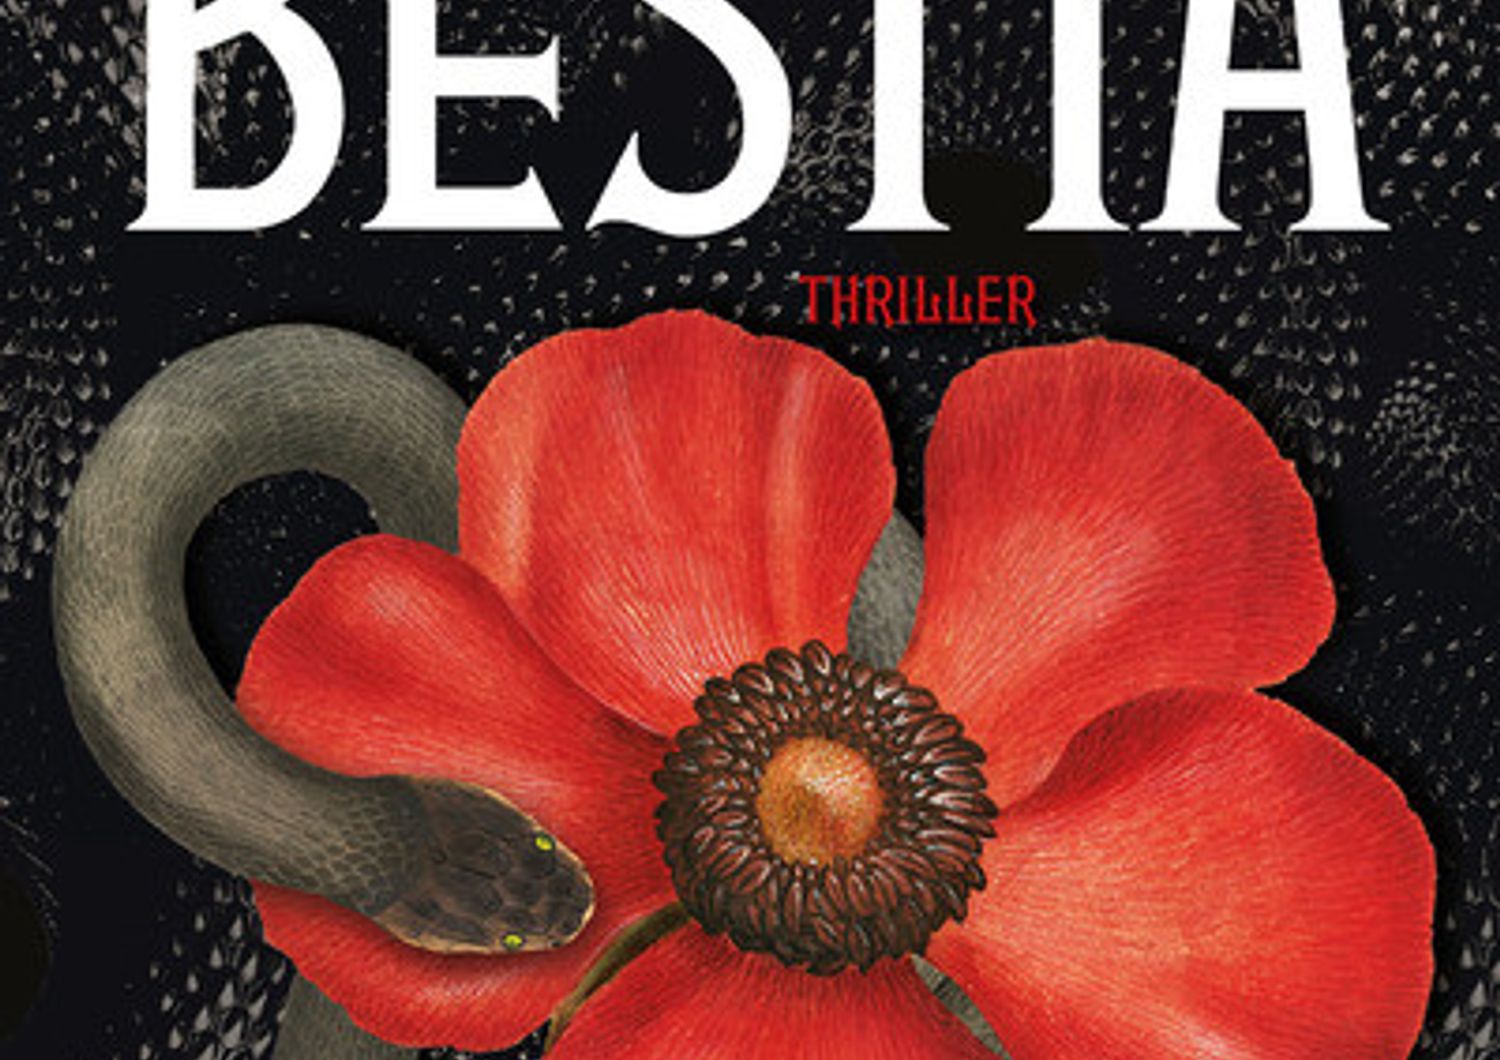 La Bestia', il thriller di successo degli 'Elena Ferrante' spagnoli